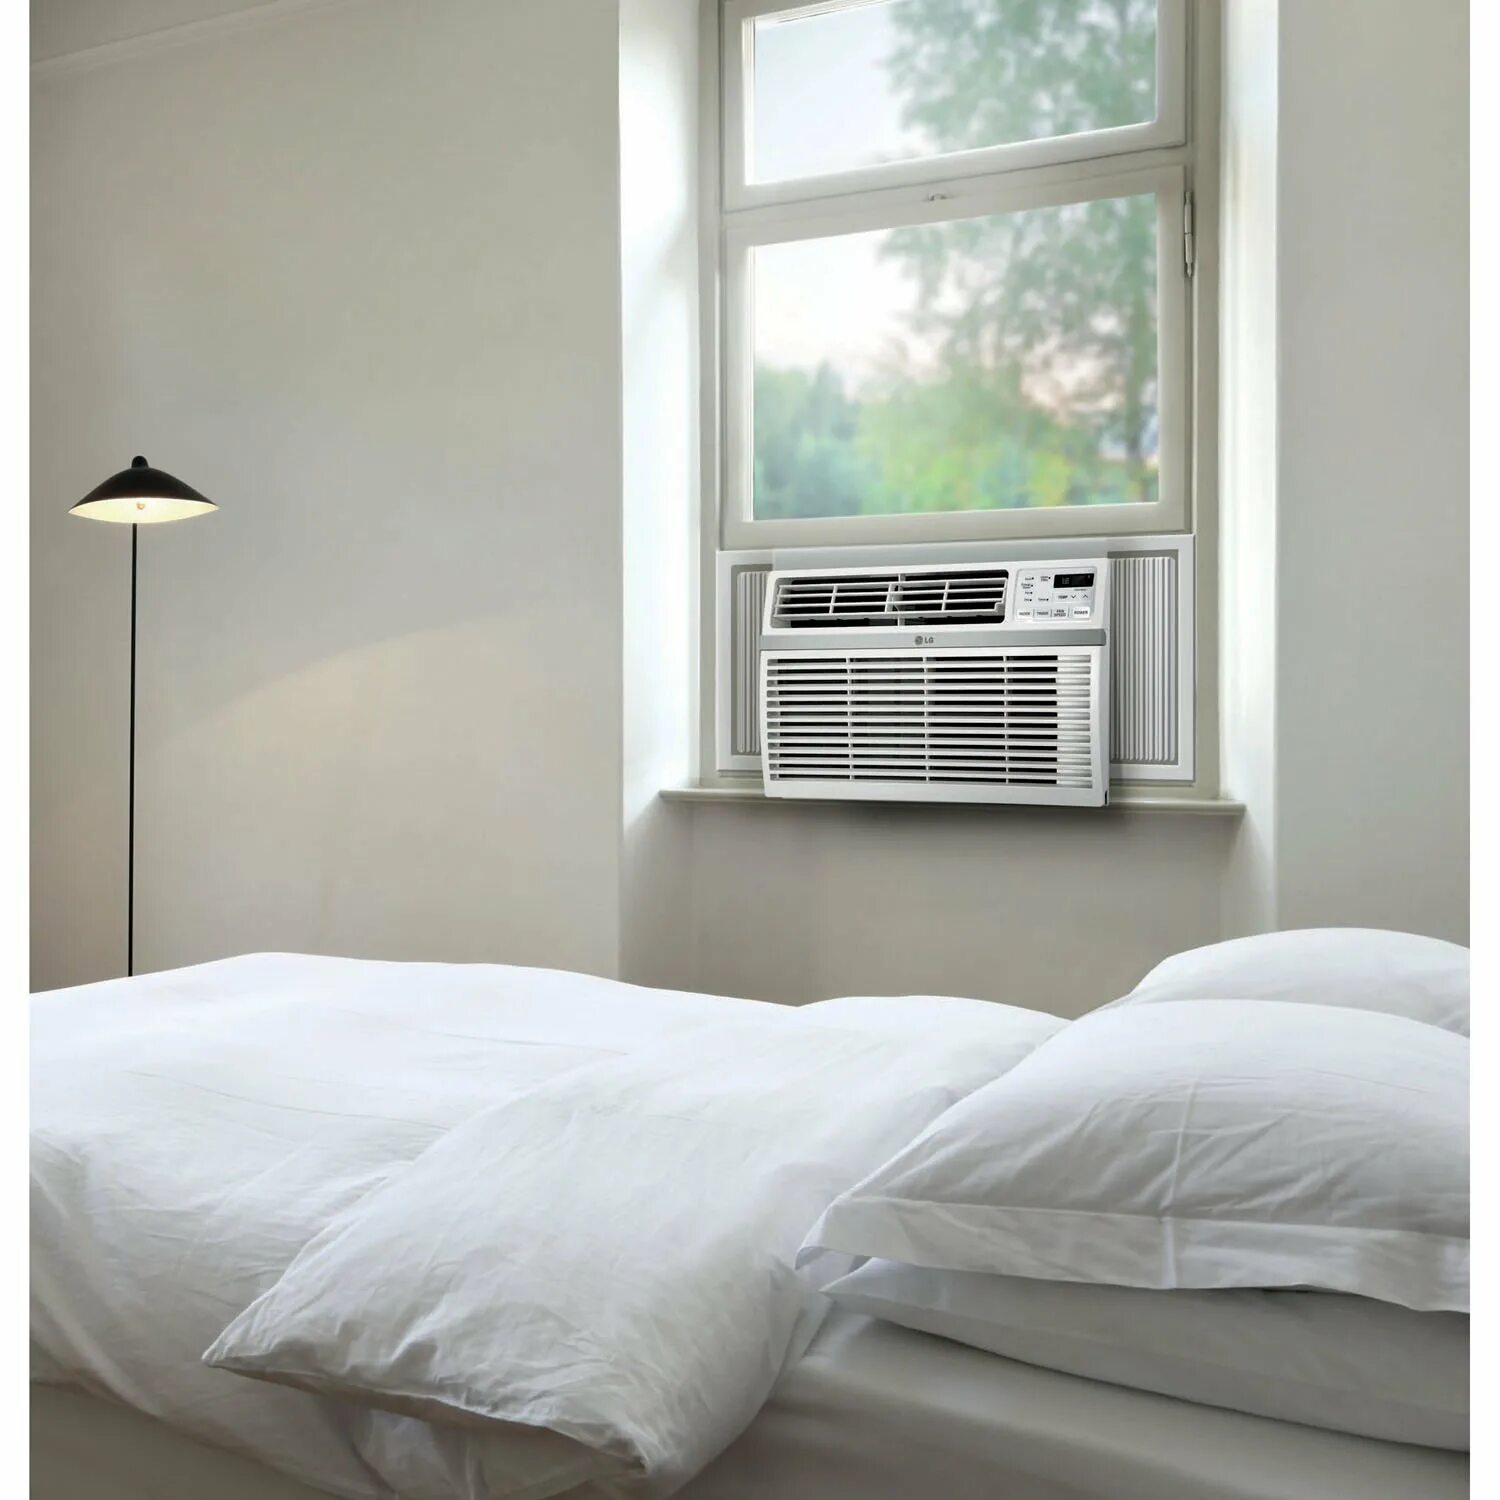 Кондиционер для дома цена фото. Кондиционер LG Room Air Conditioner. Оконный кондиционер LG LW-n2460bhg. Оконный кондиционер Axioma asjc09-nm1a. LG Window Room Air Conditioner model LW C 0961hl.